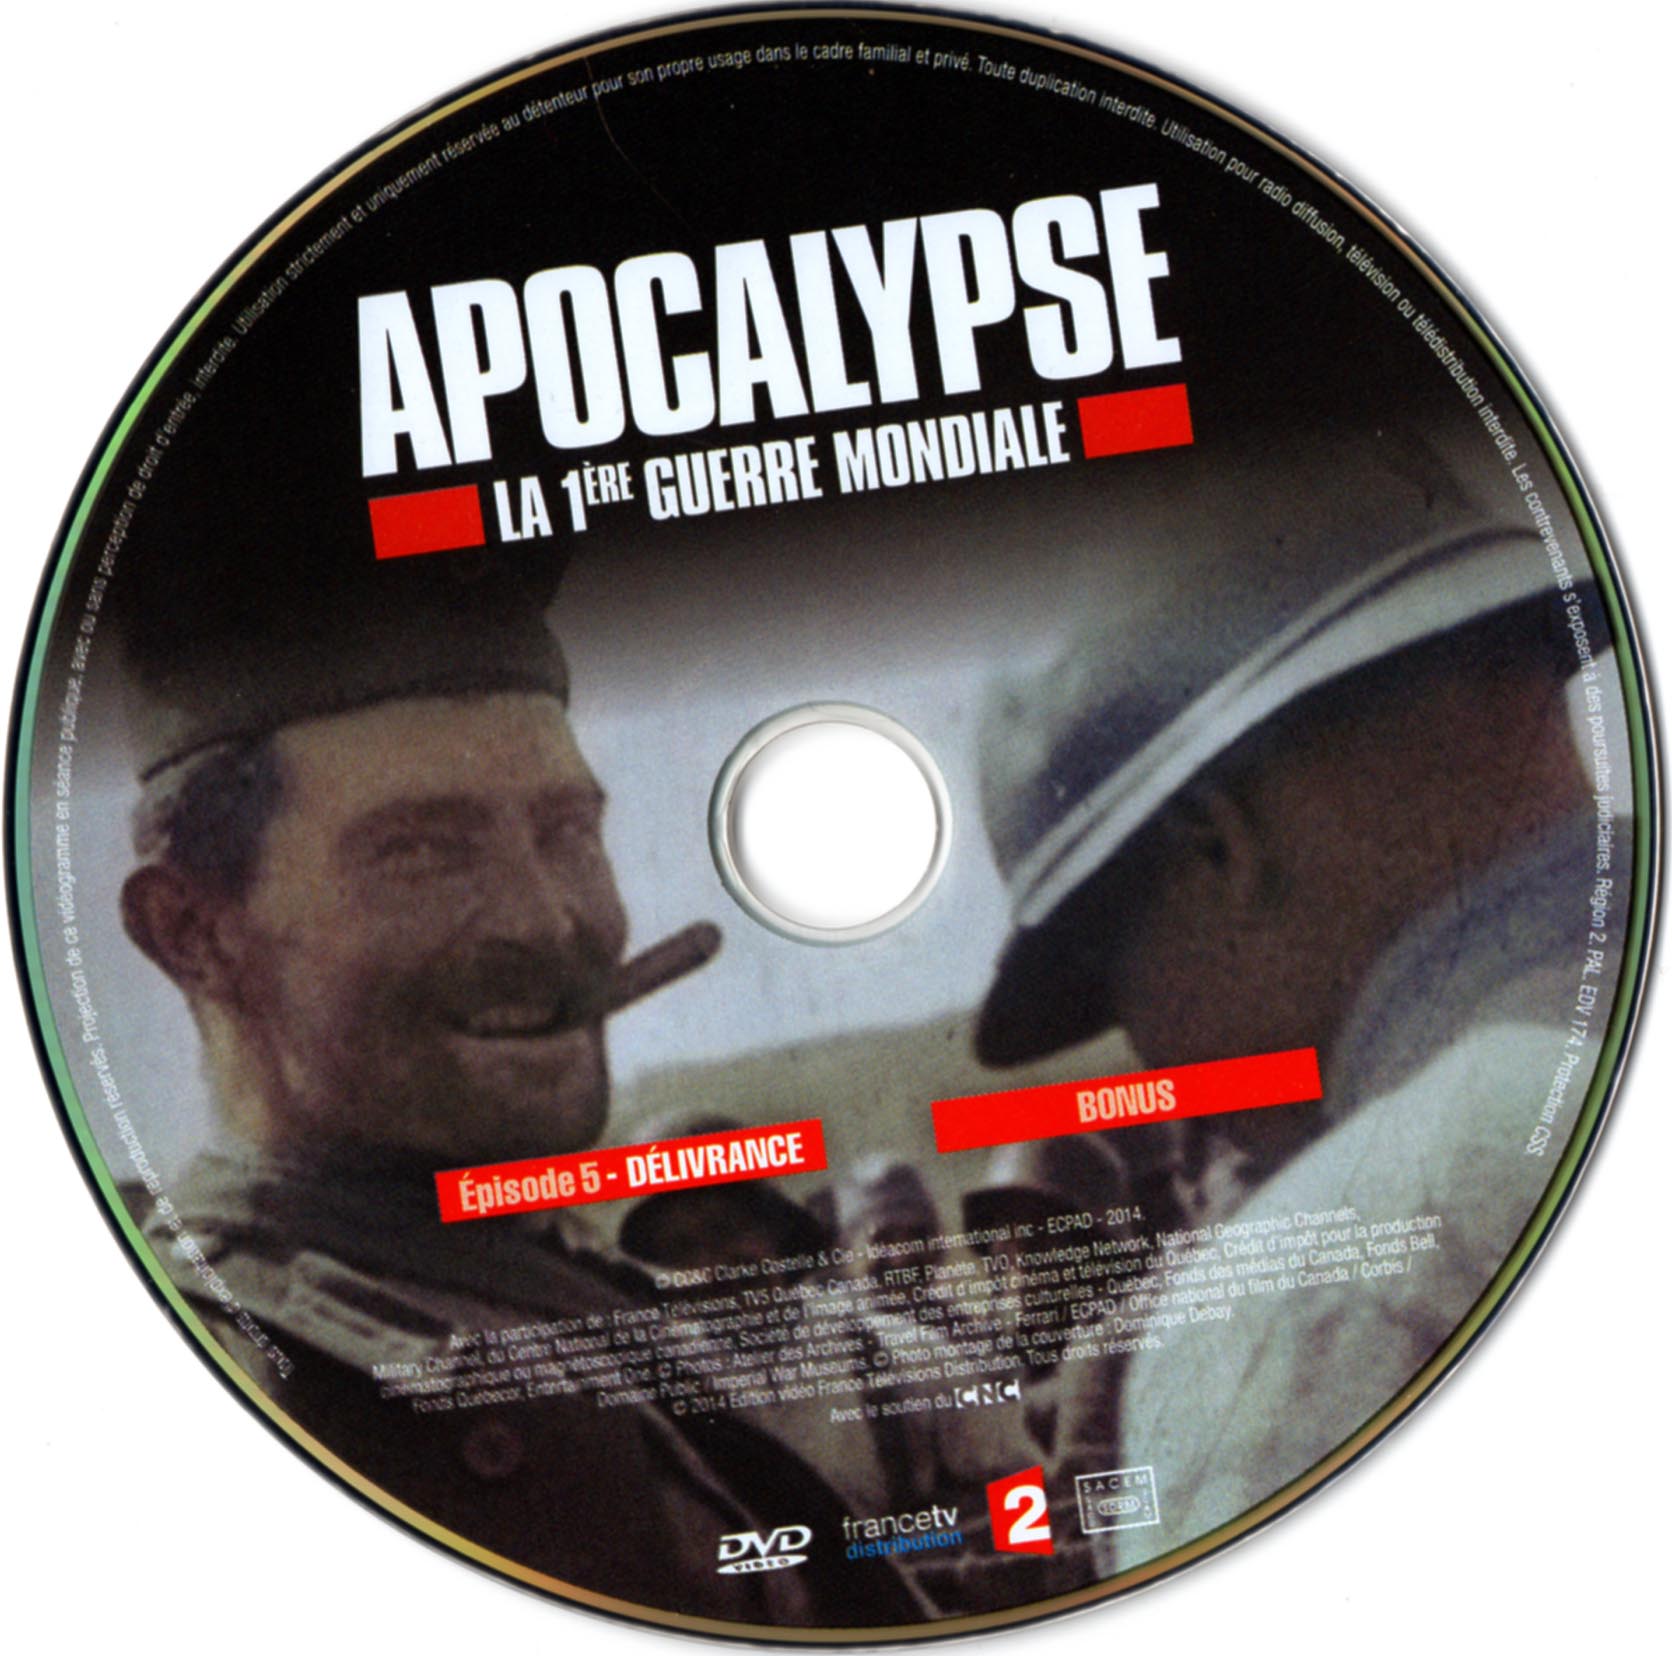 Apocalypse - 1re guerre mondiale DISC 3 v2